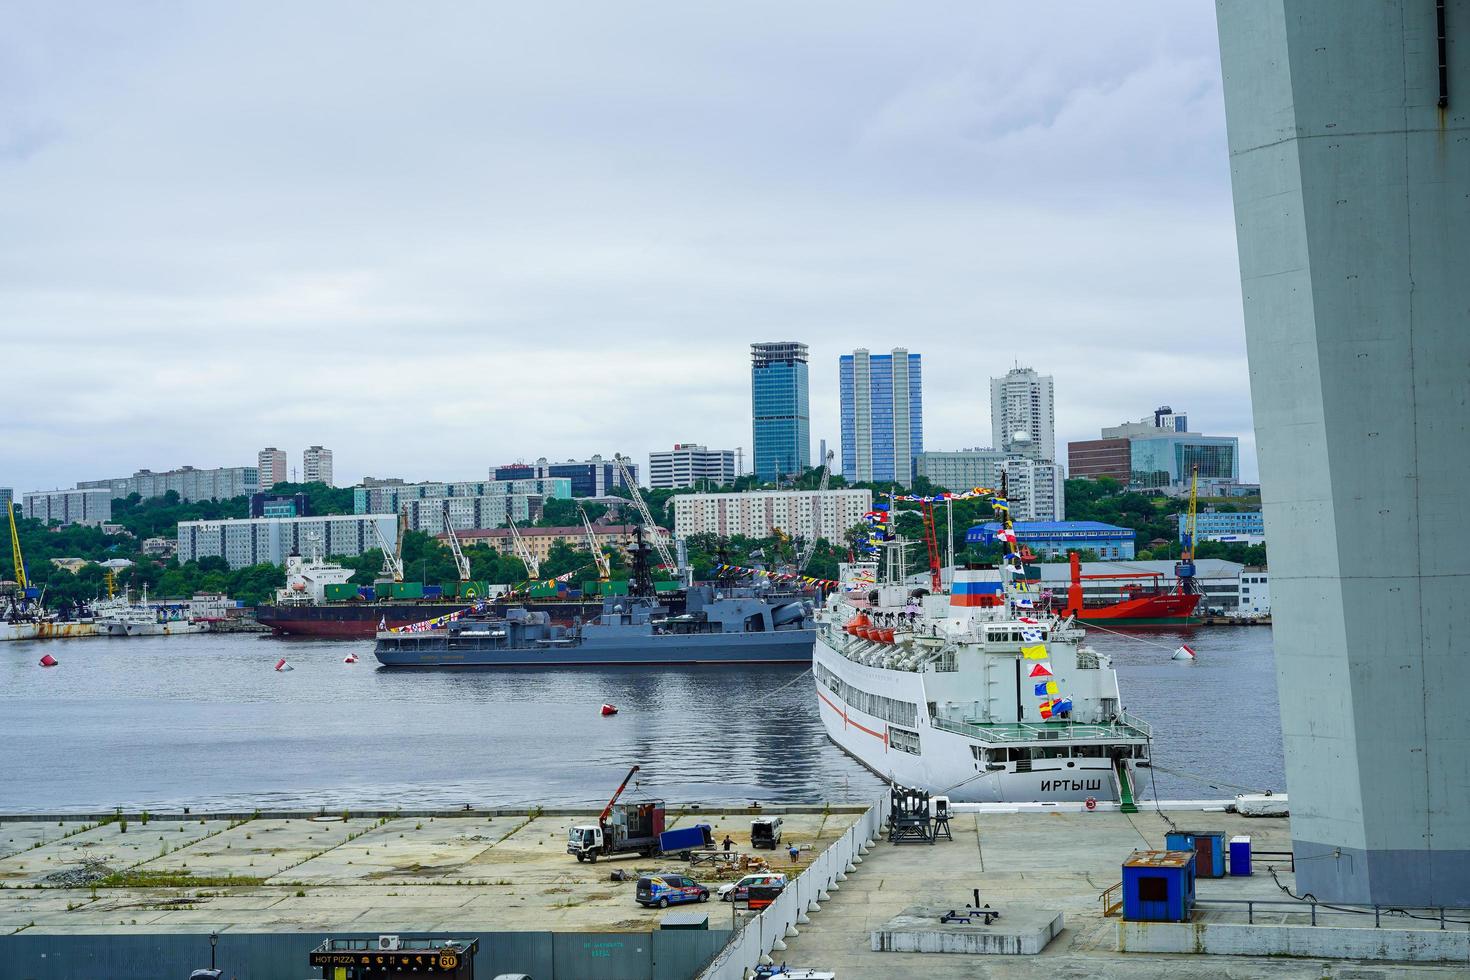 vladivostok, rússia - 26 de julho de 2020 - navios de guerra no fundo da paisagem urbana. dia da marinha. foto